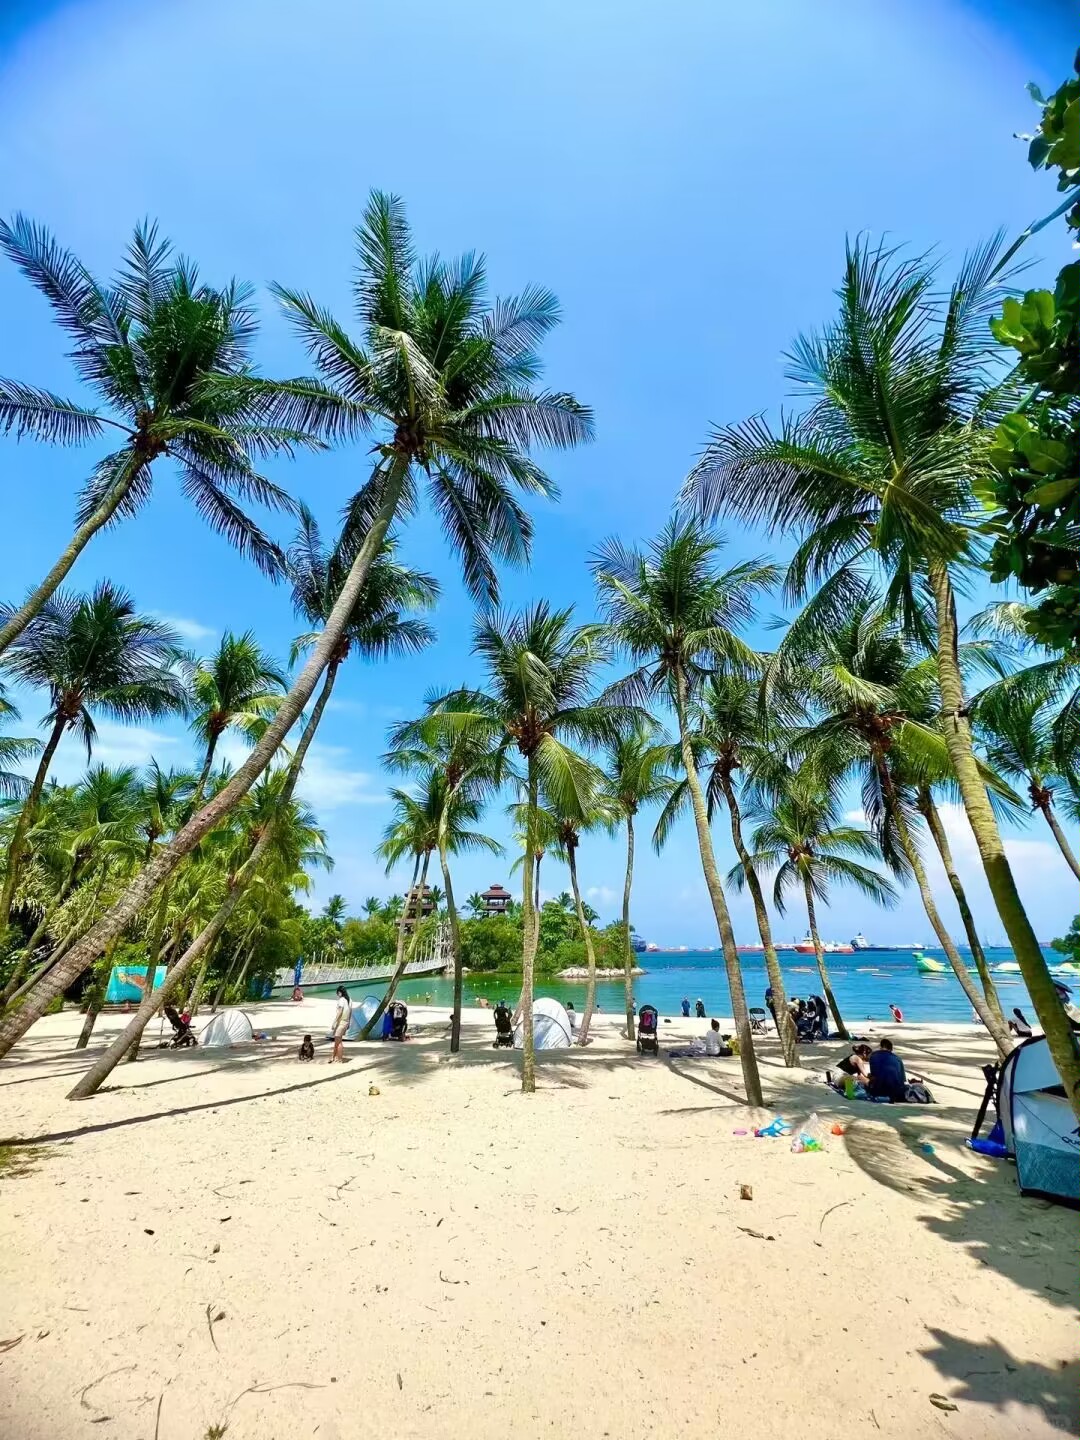 阳光沙滩,椰子树,日落余辉,美到让你惊讶 